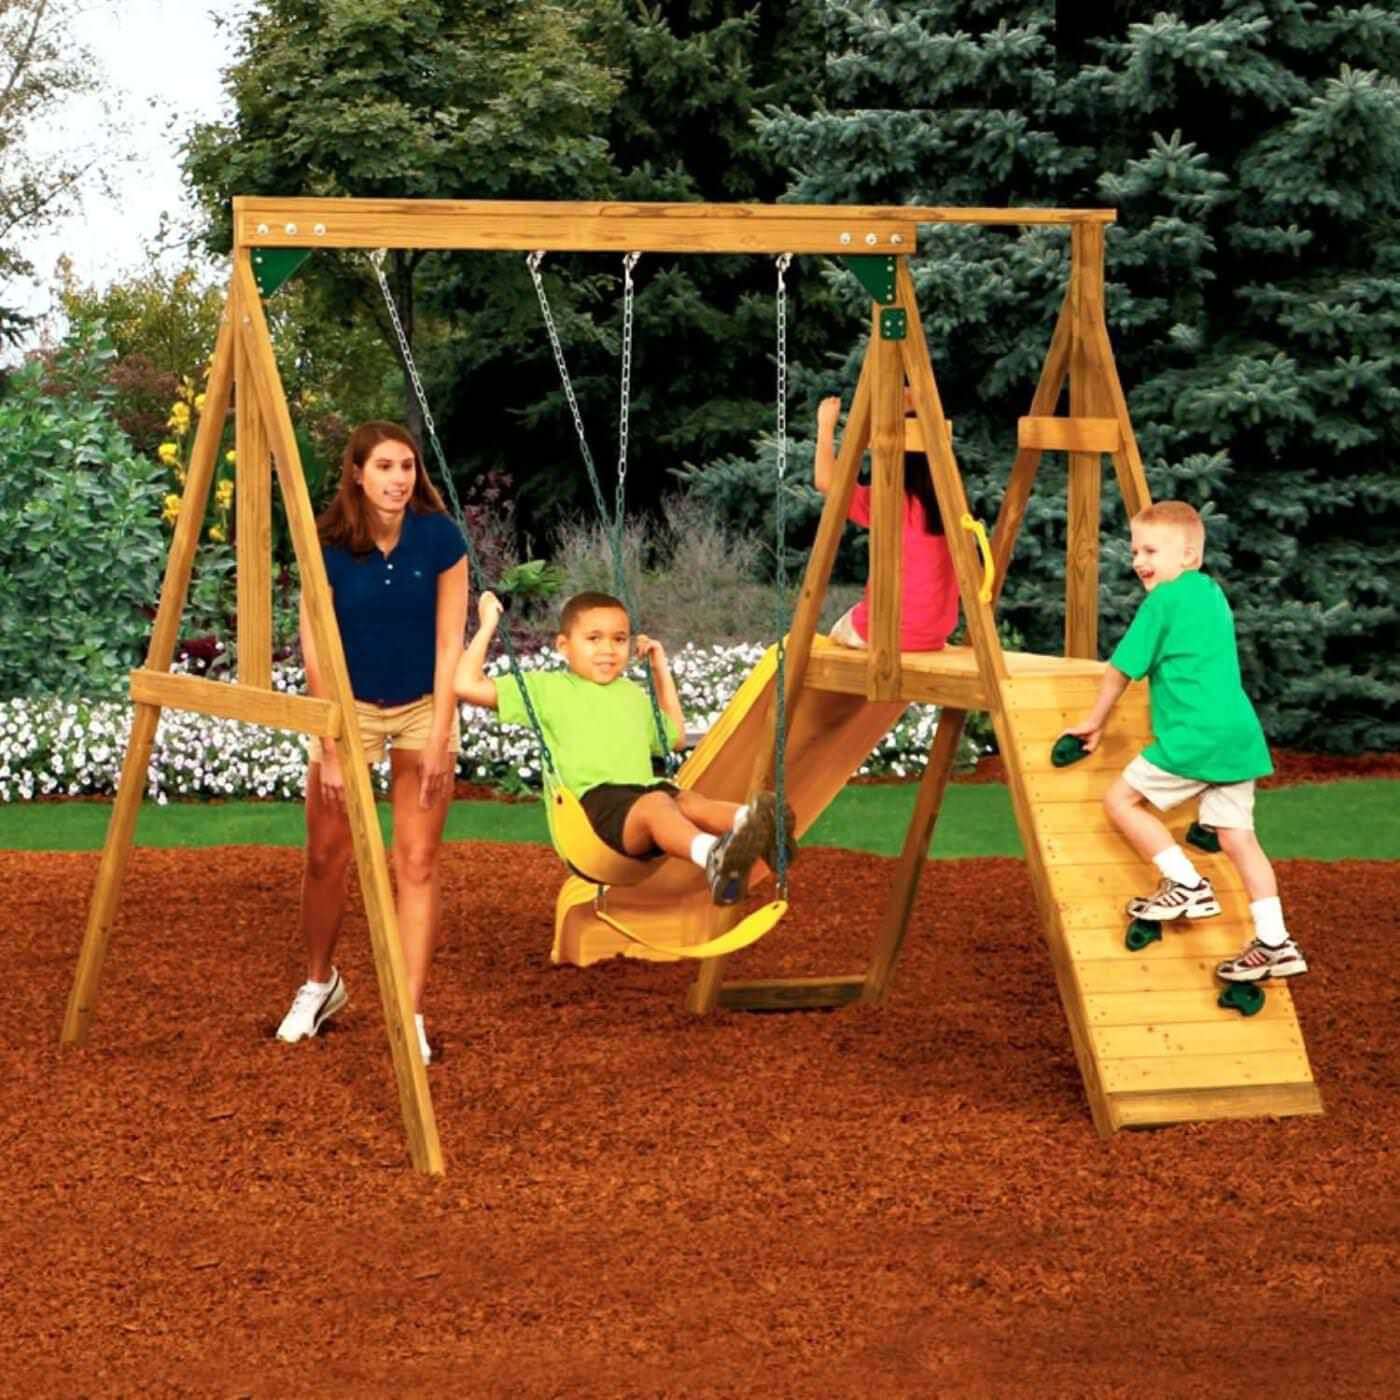 Kids Outdoor Playground Sets
 Best 35 Kids Home Playground Ideas AllstateLogHomes